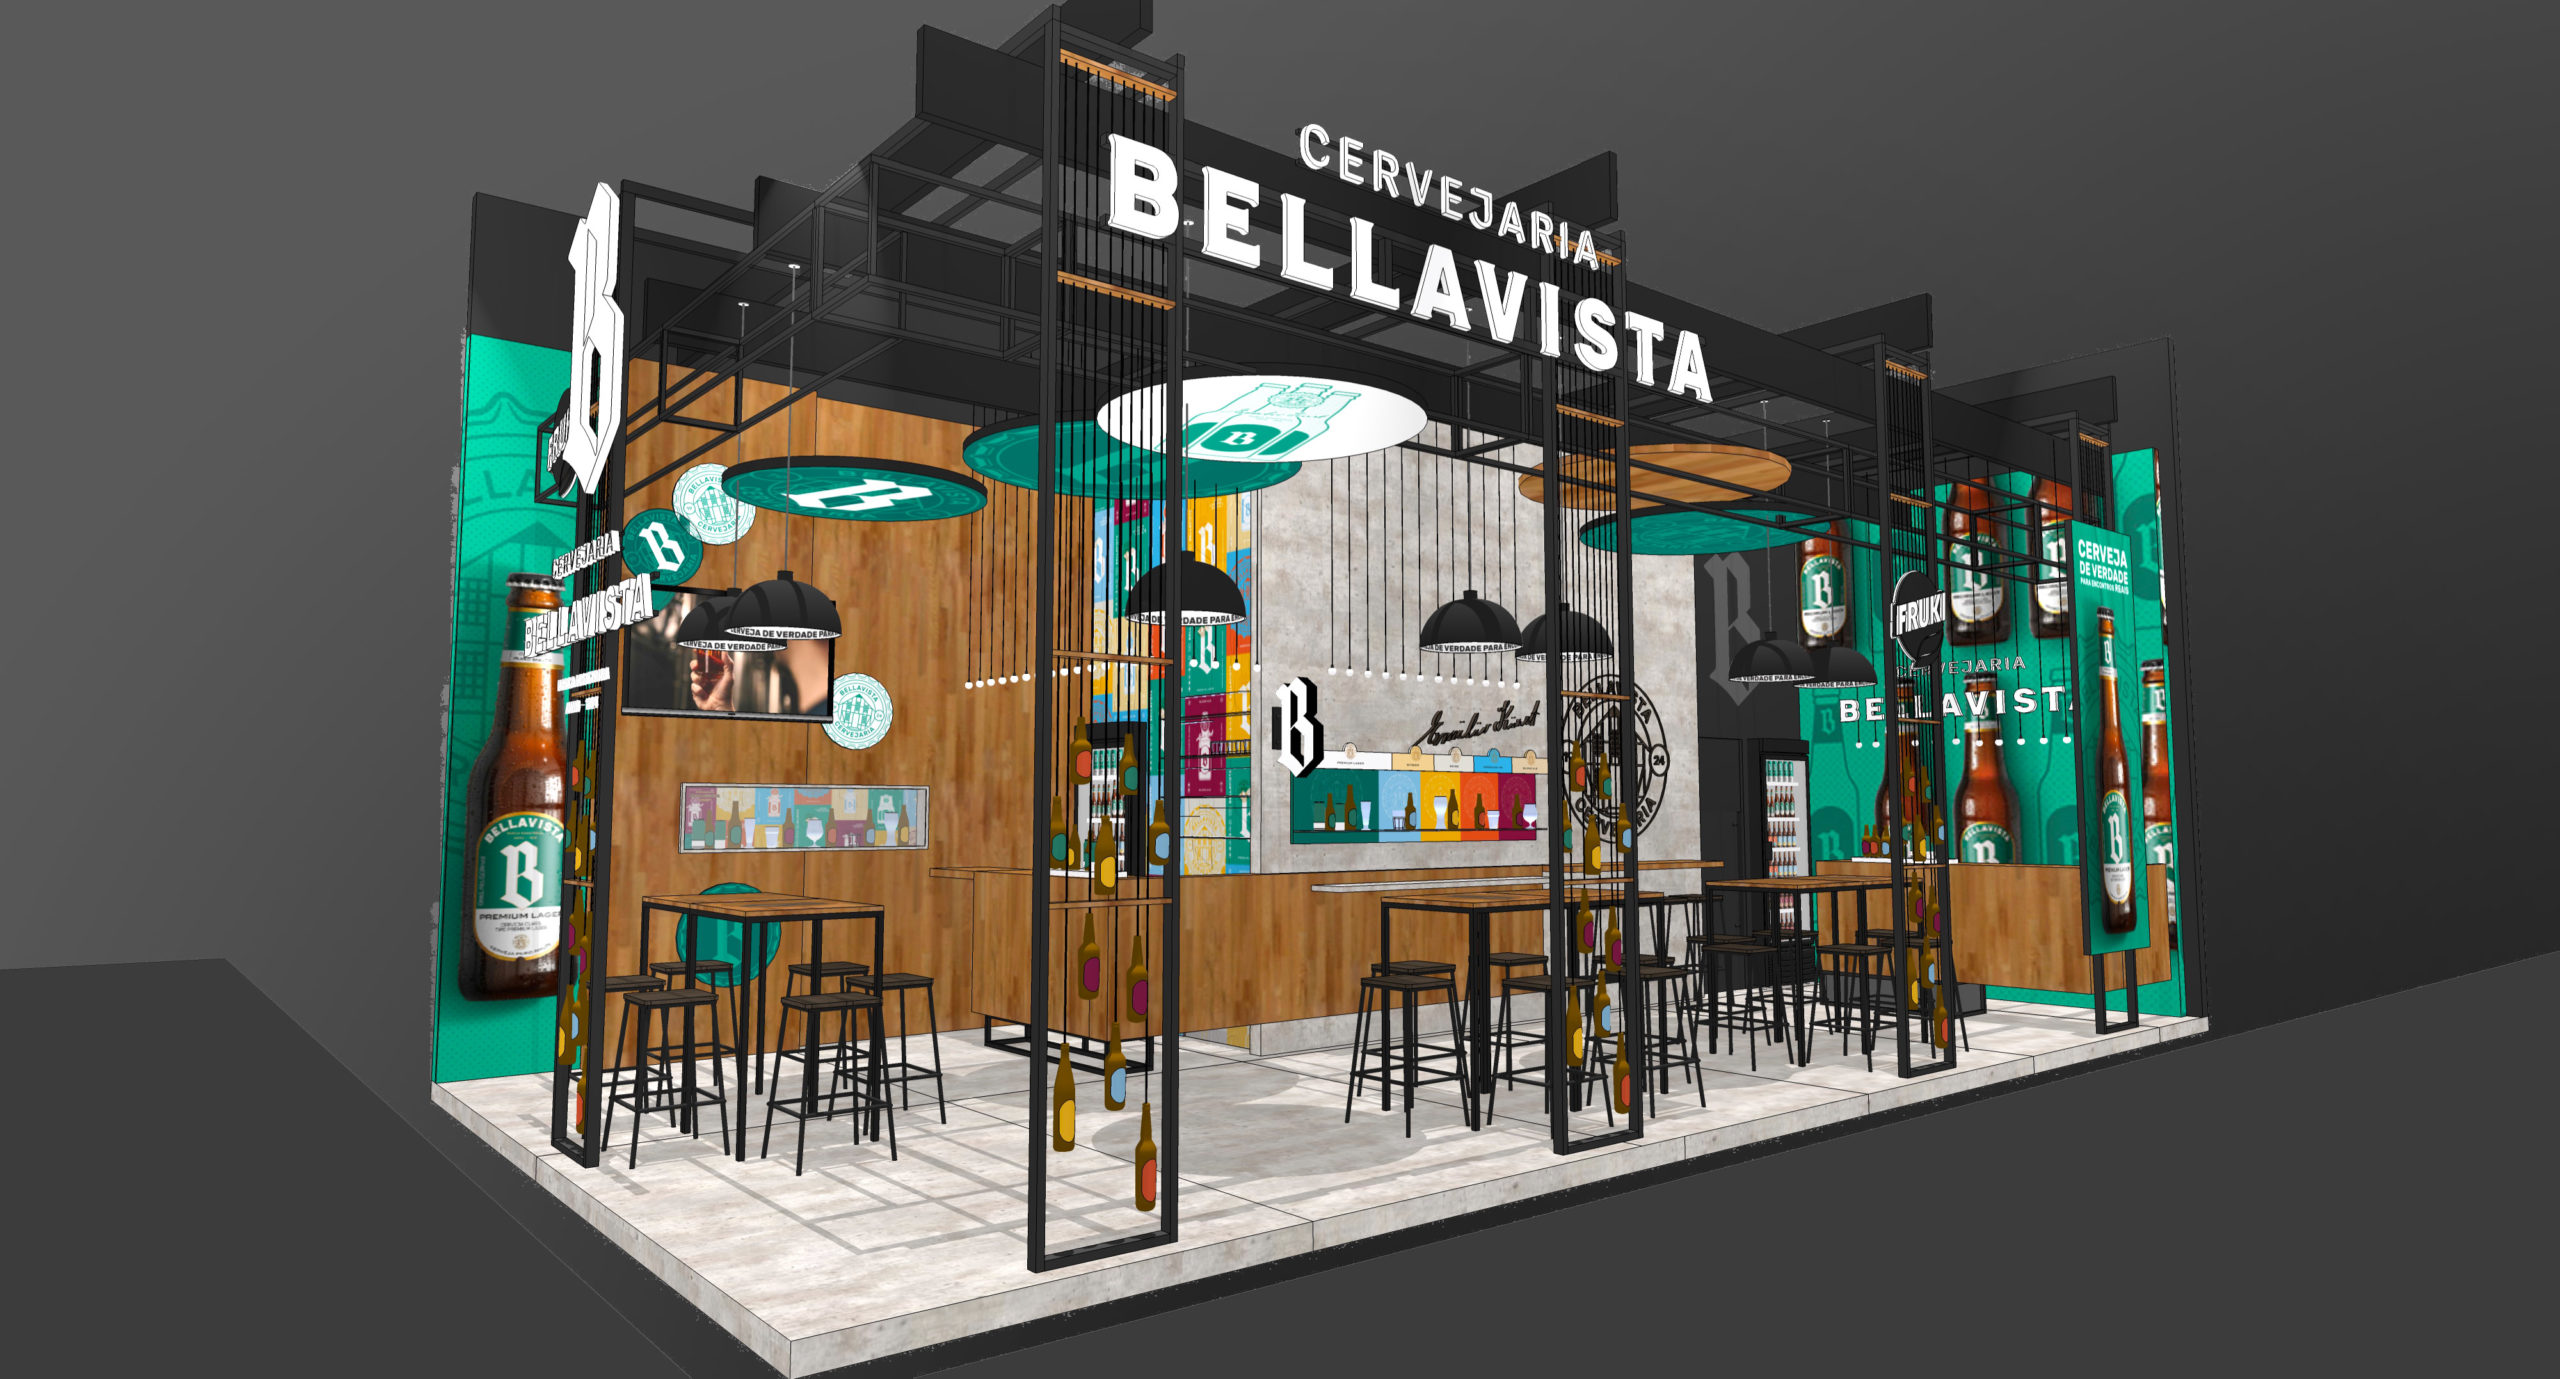 Projeção de estande da Bellavista na Expoagas.